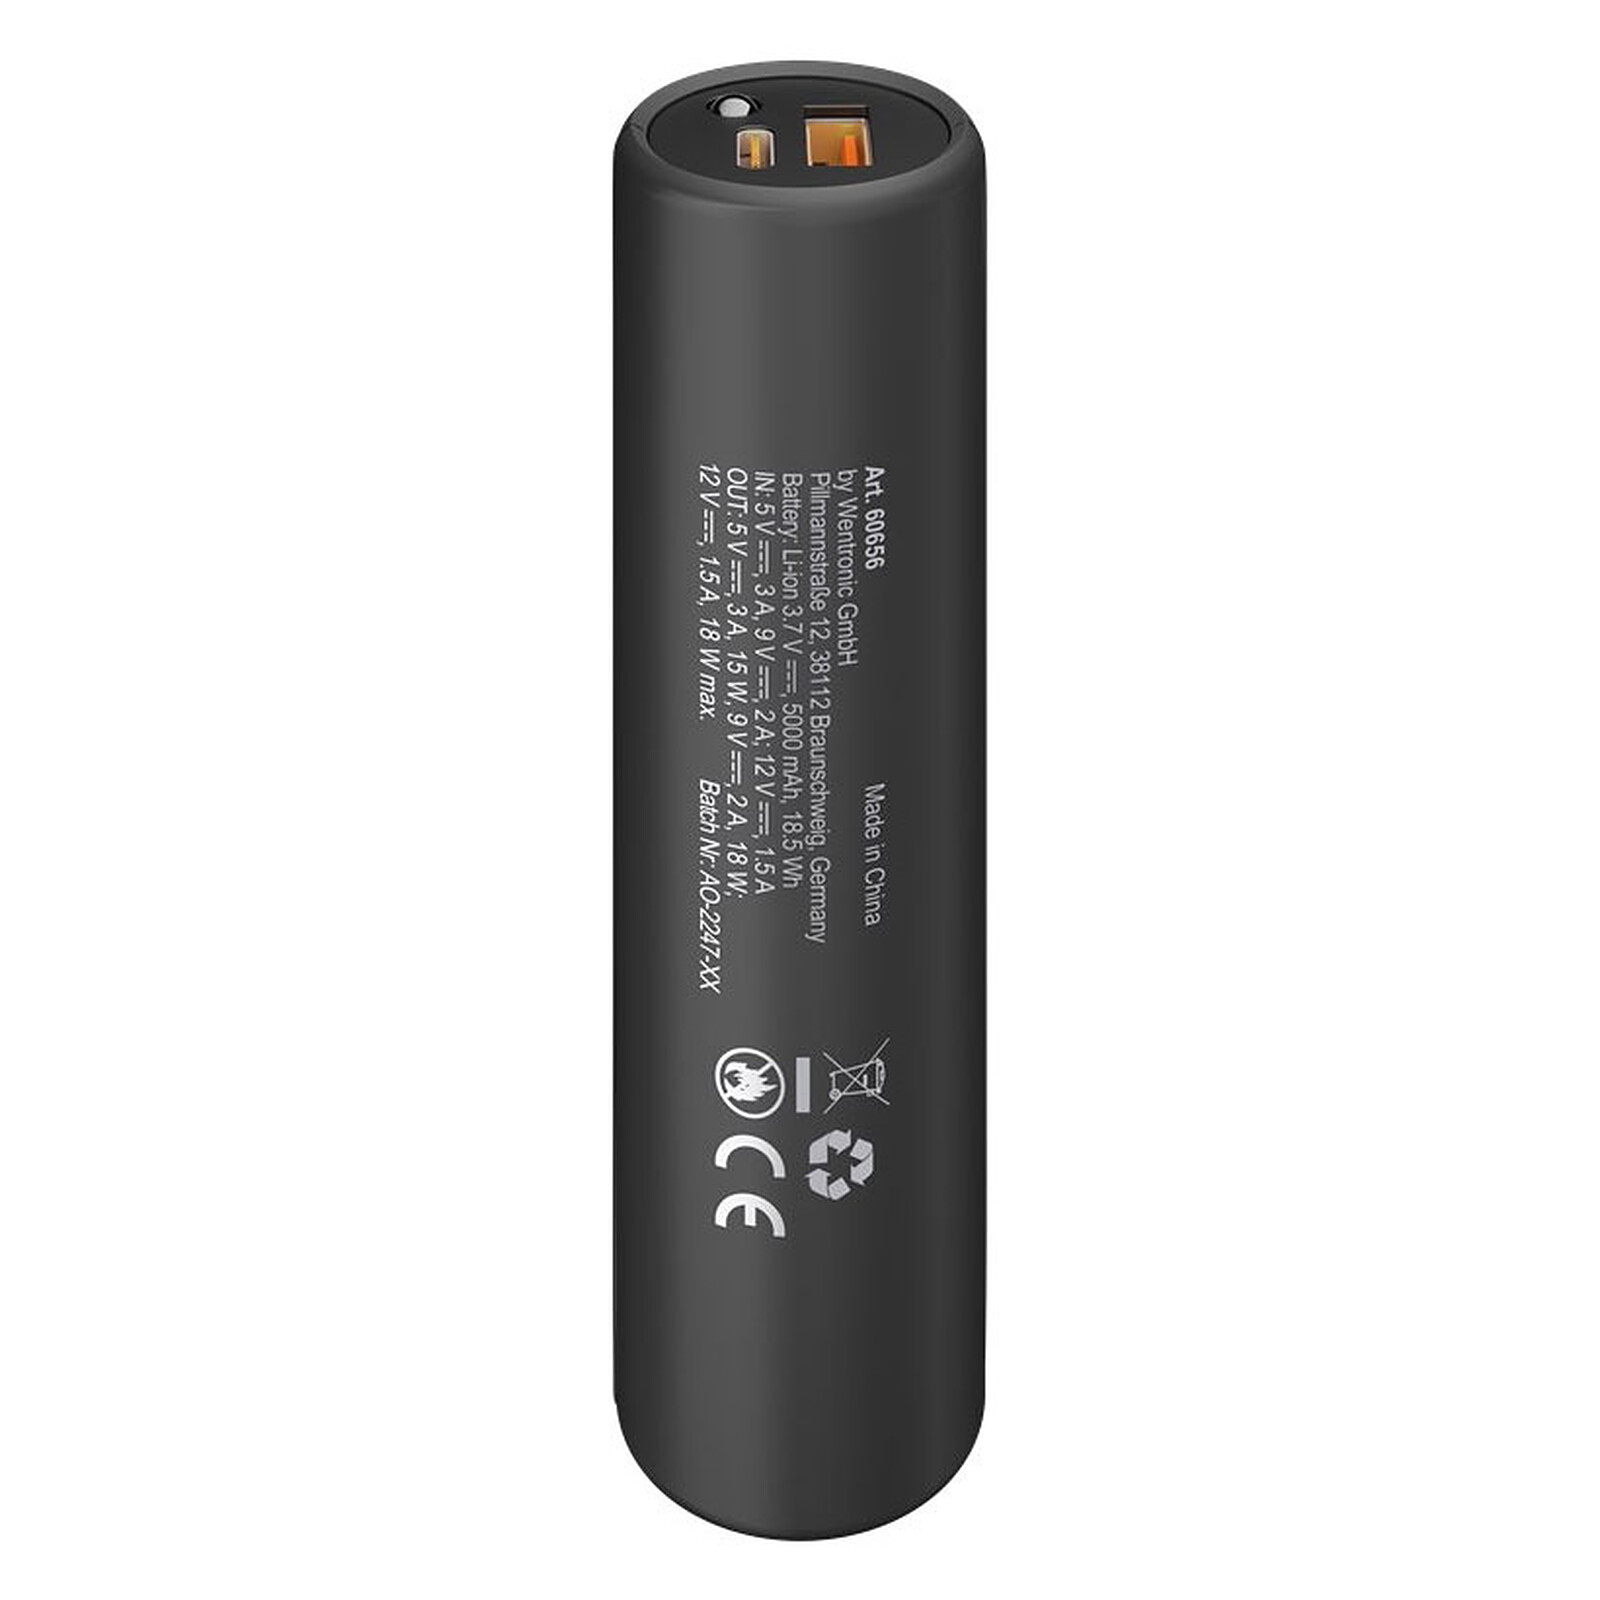 Mobility Lab Powerbank 30000 mAh (Noir) - Batterie externe - LDLC